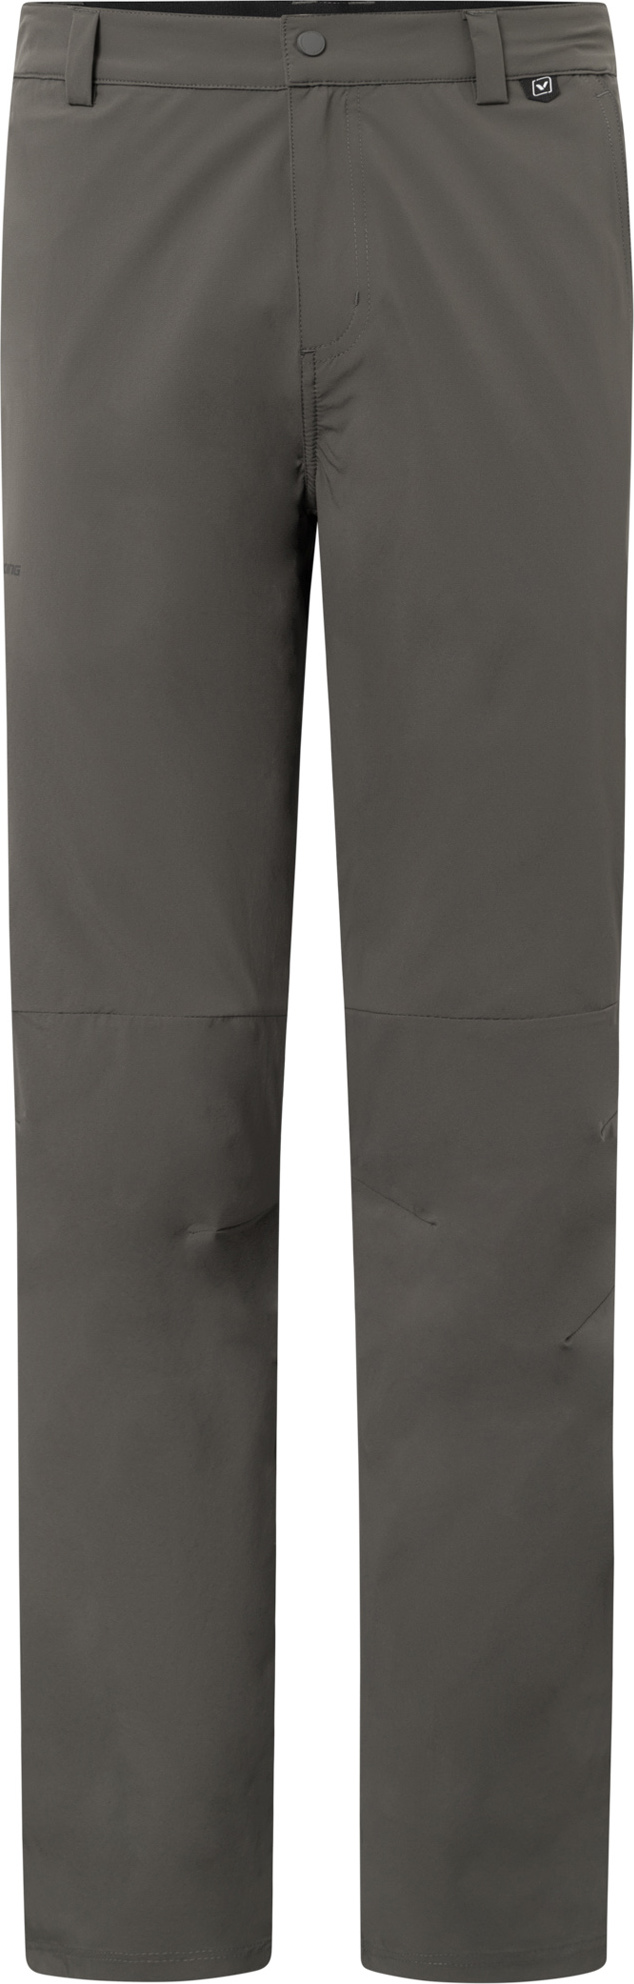 Pánské outdoorové kalhoty VIKING Expander Ultralight šedá Velikost: M